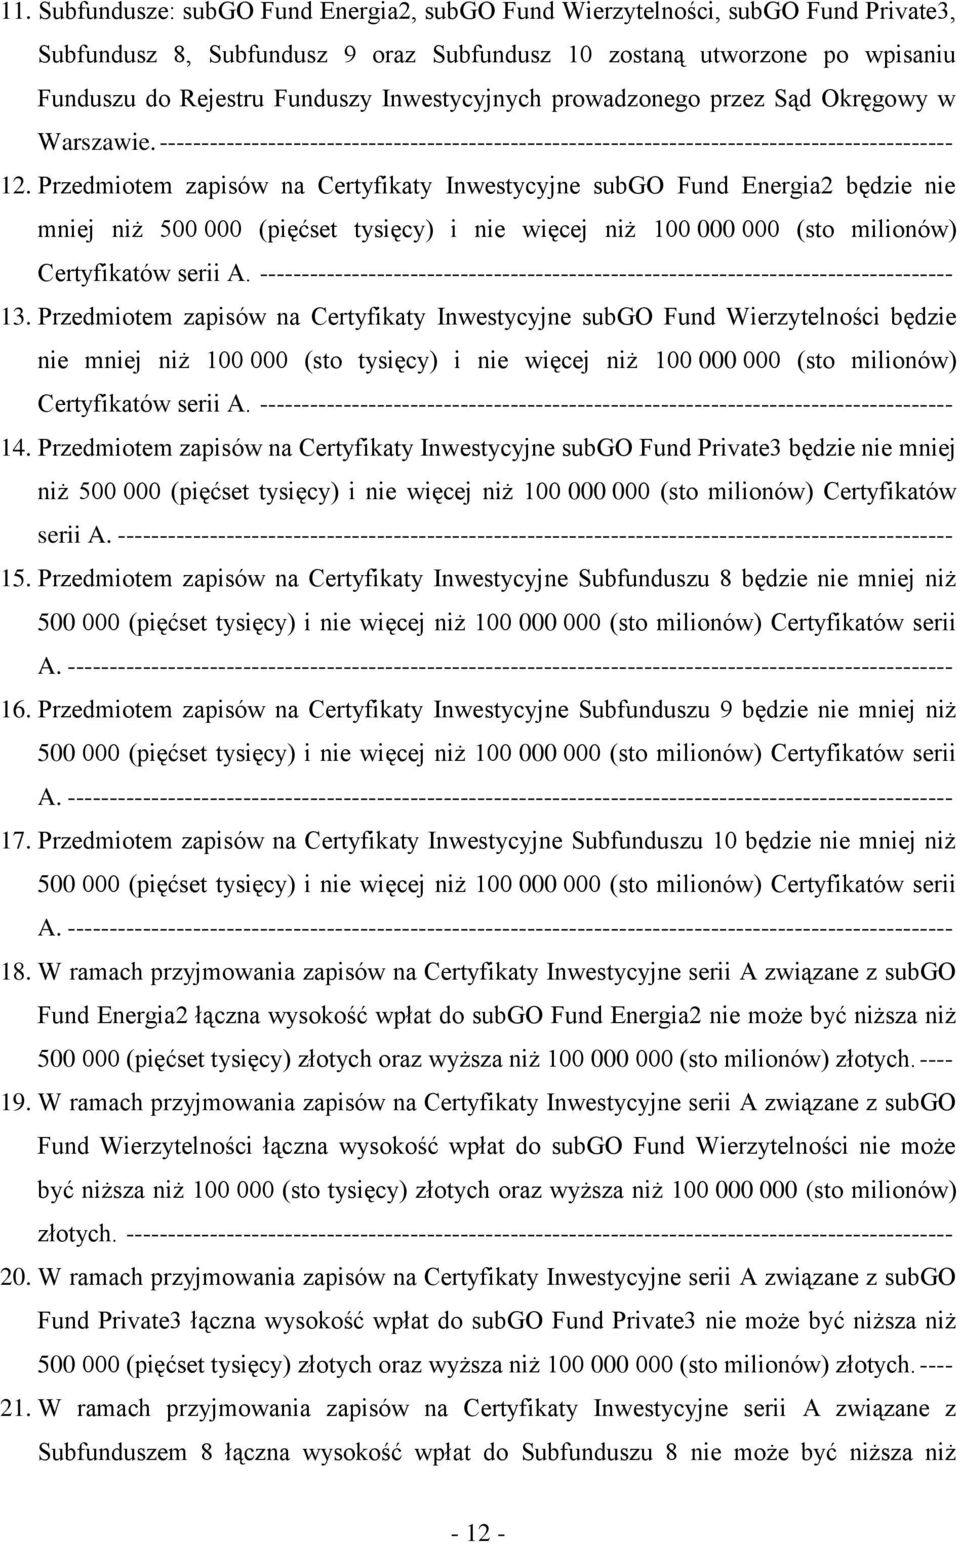 Przedmiotem zapisów na Certyfikaty Inwestycyjne subgo Fund Energia2 będzie nie mniej niż 500 000 (pięćset tysięcy) i nie więcej niż 100 000 000 (sto milionów) Certyfikatów serii A.